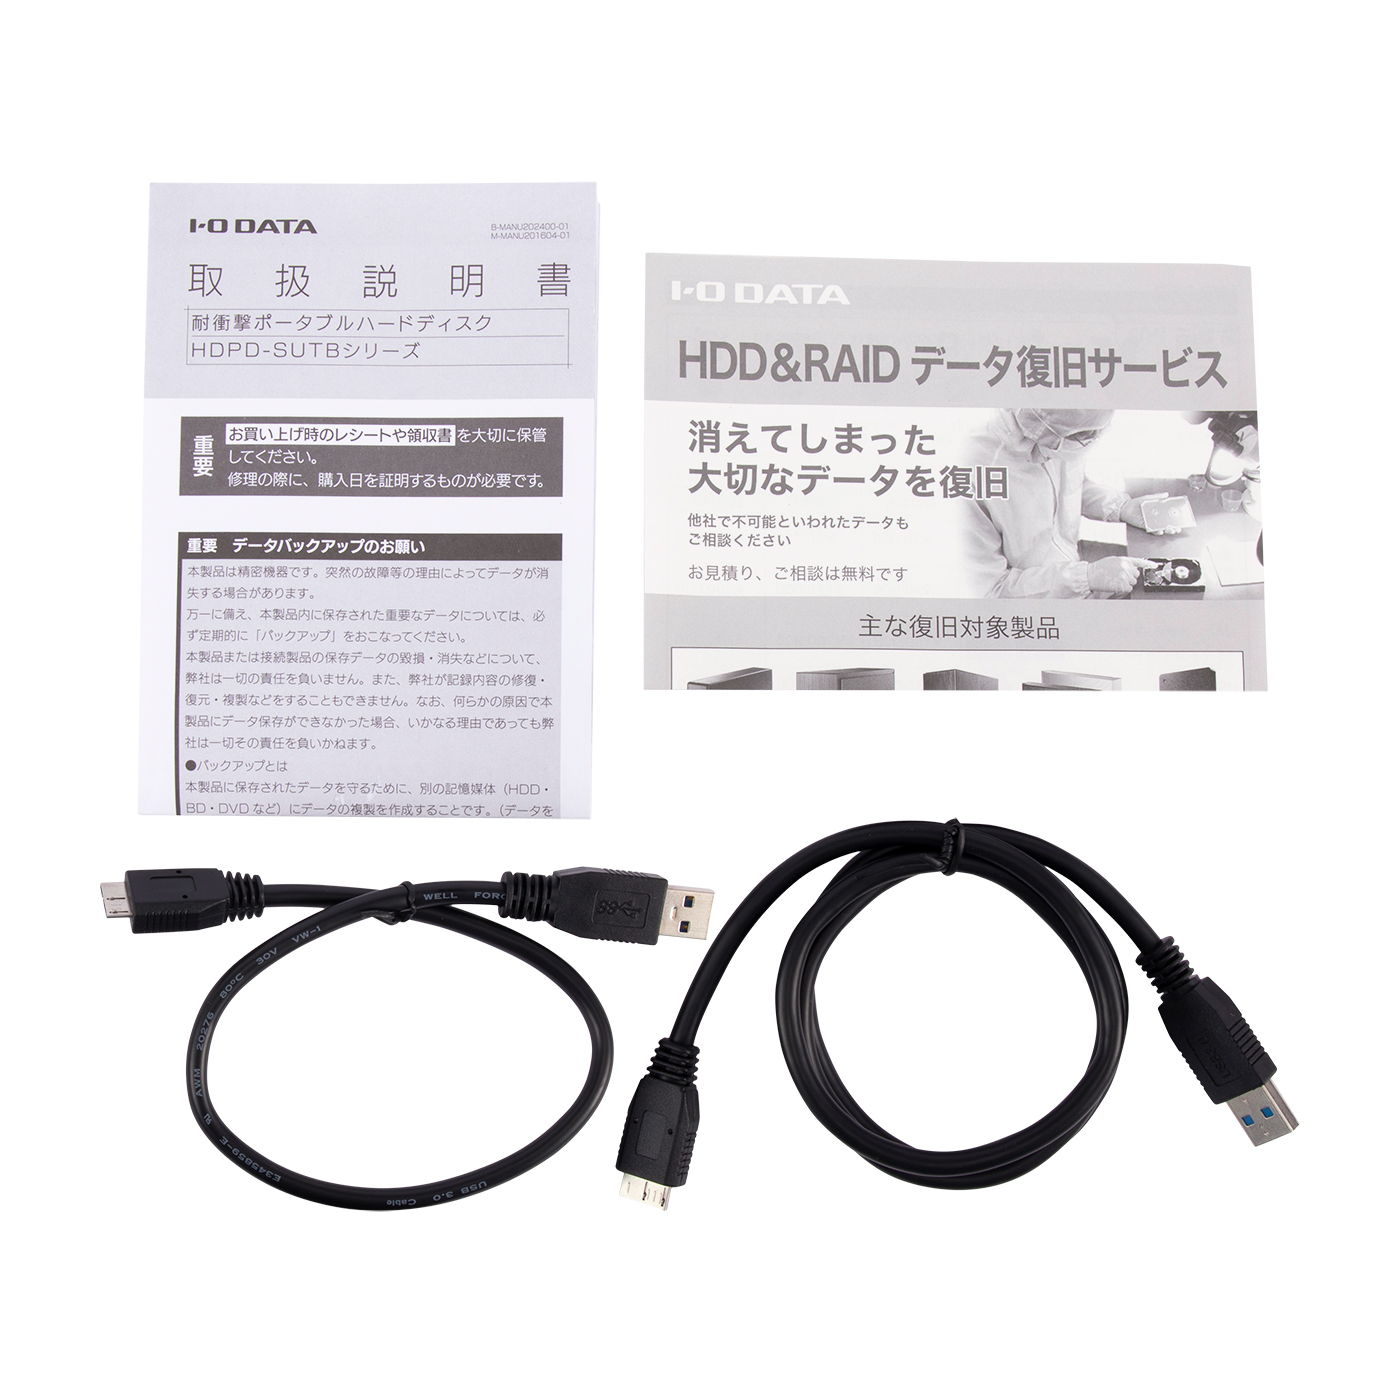 I-O DATA I・O DATA アイ・オー・データ USB 3.2 Gen 1(USB 3.0)/2.0